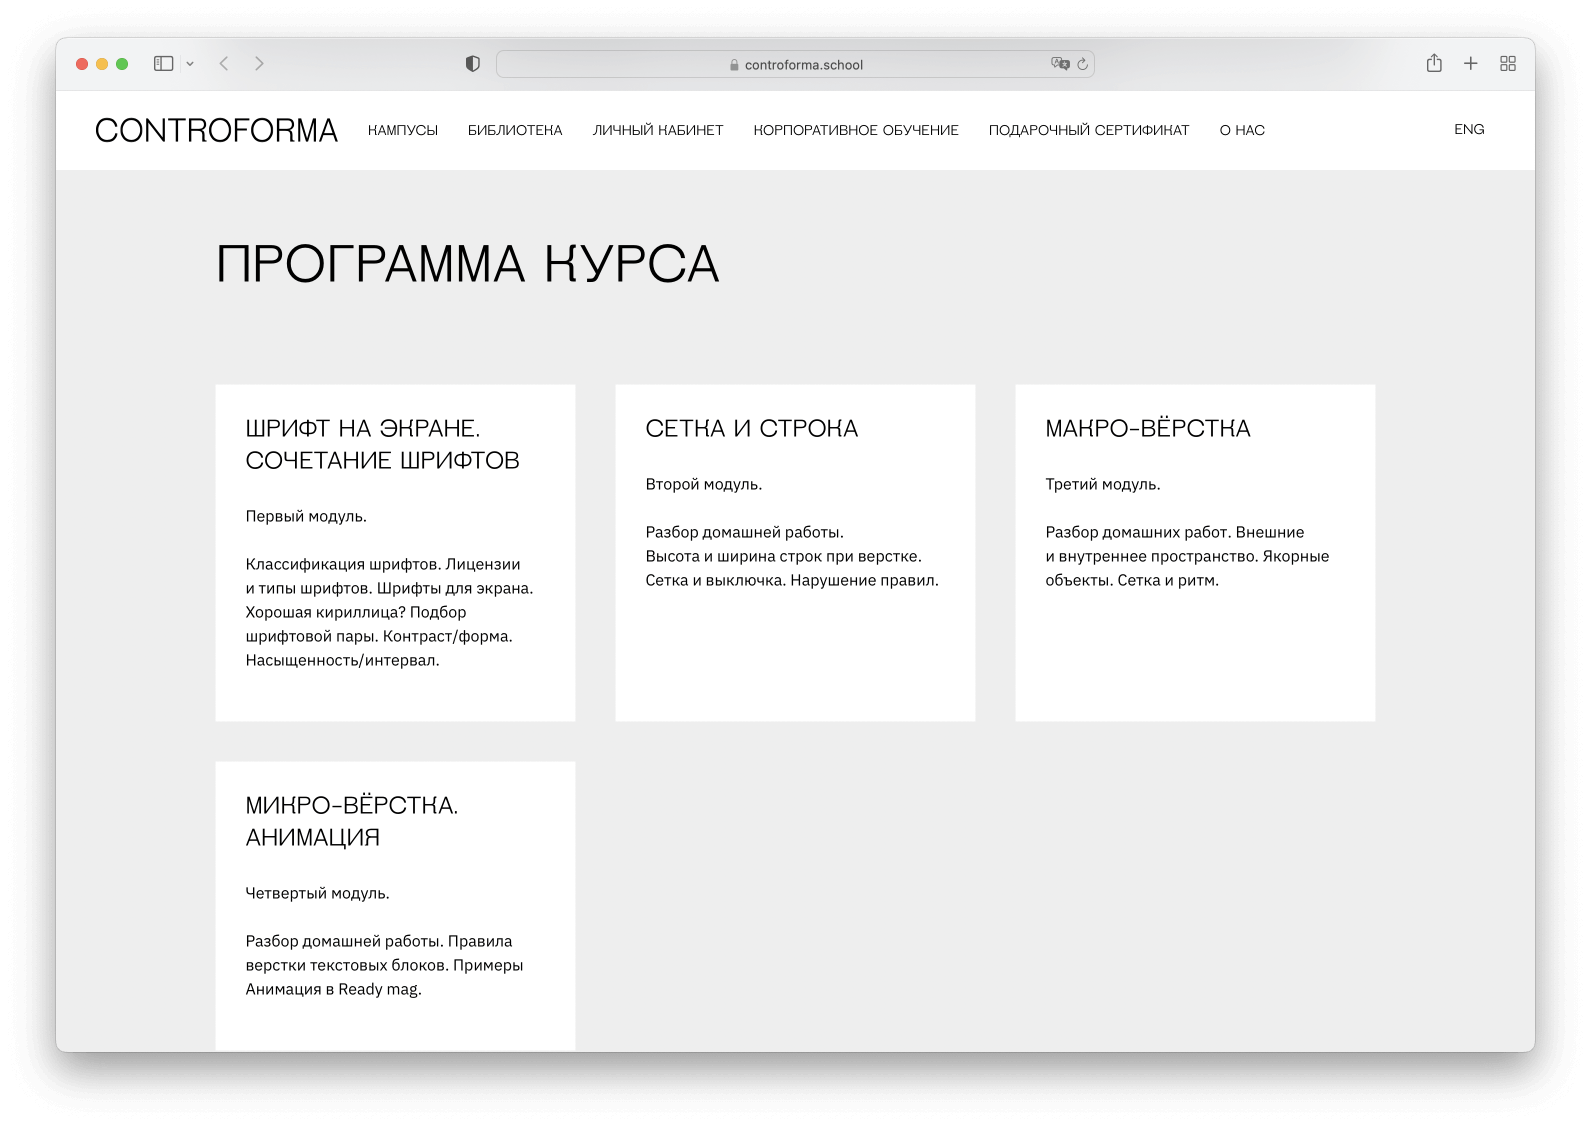 Авторская программа от Филипп Нуруллина, шрифтового дизайнера и веб-дизайнера. Основателя студии patat